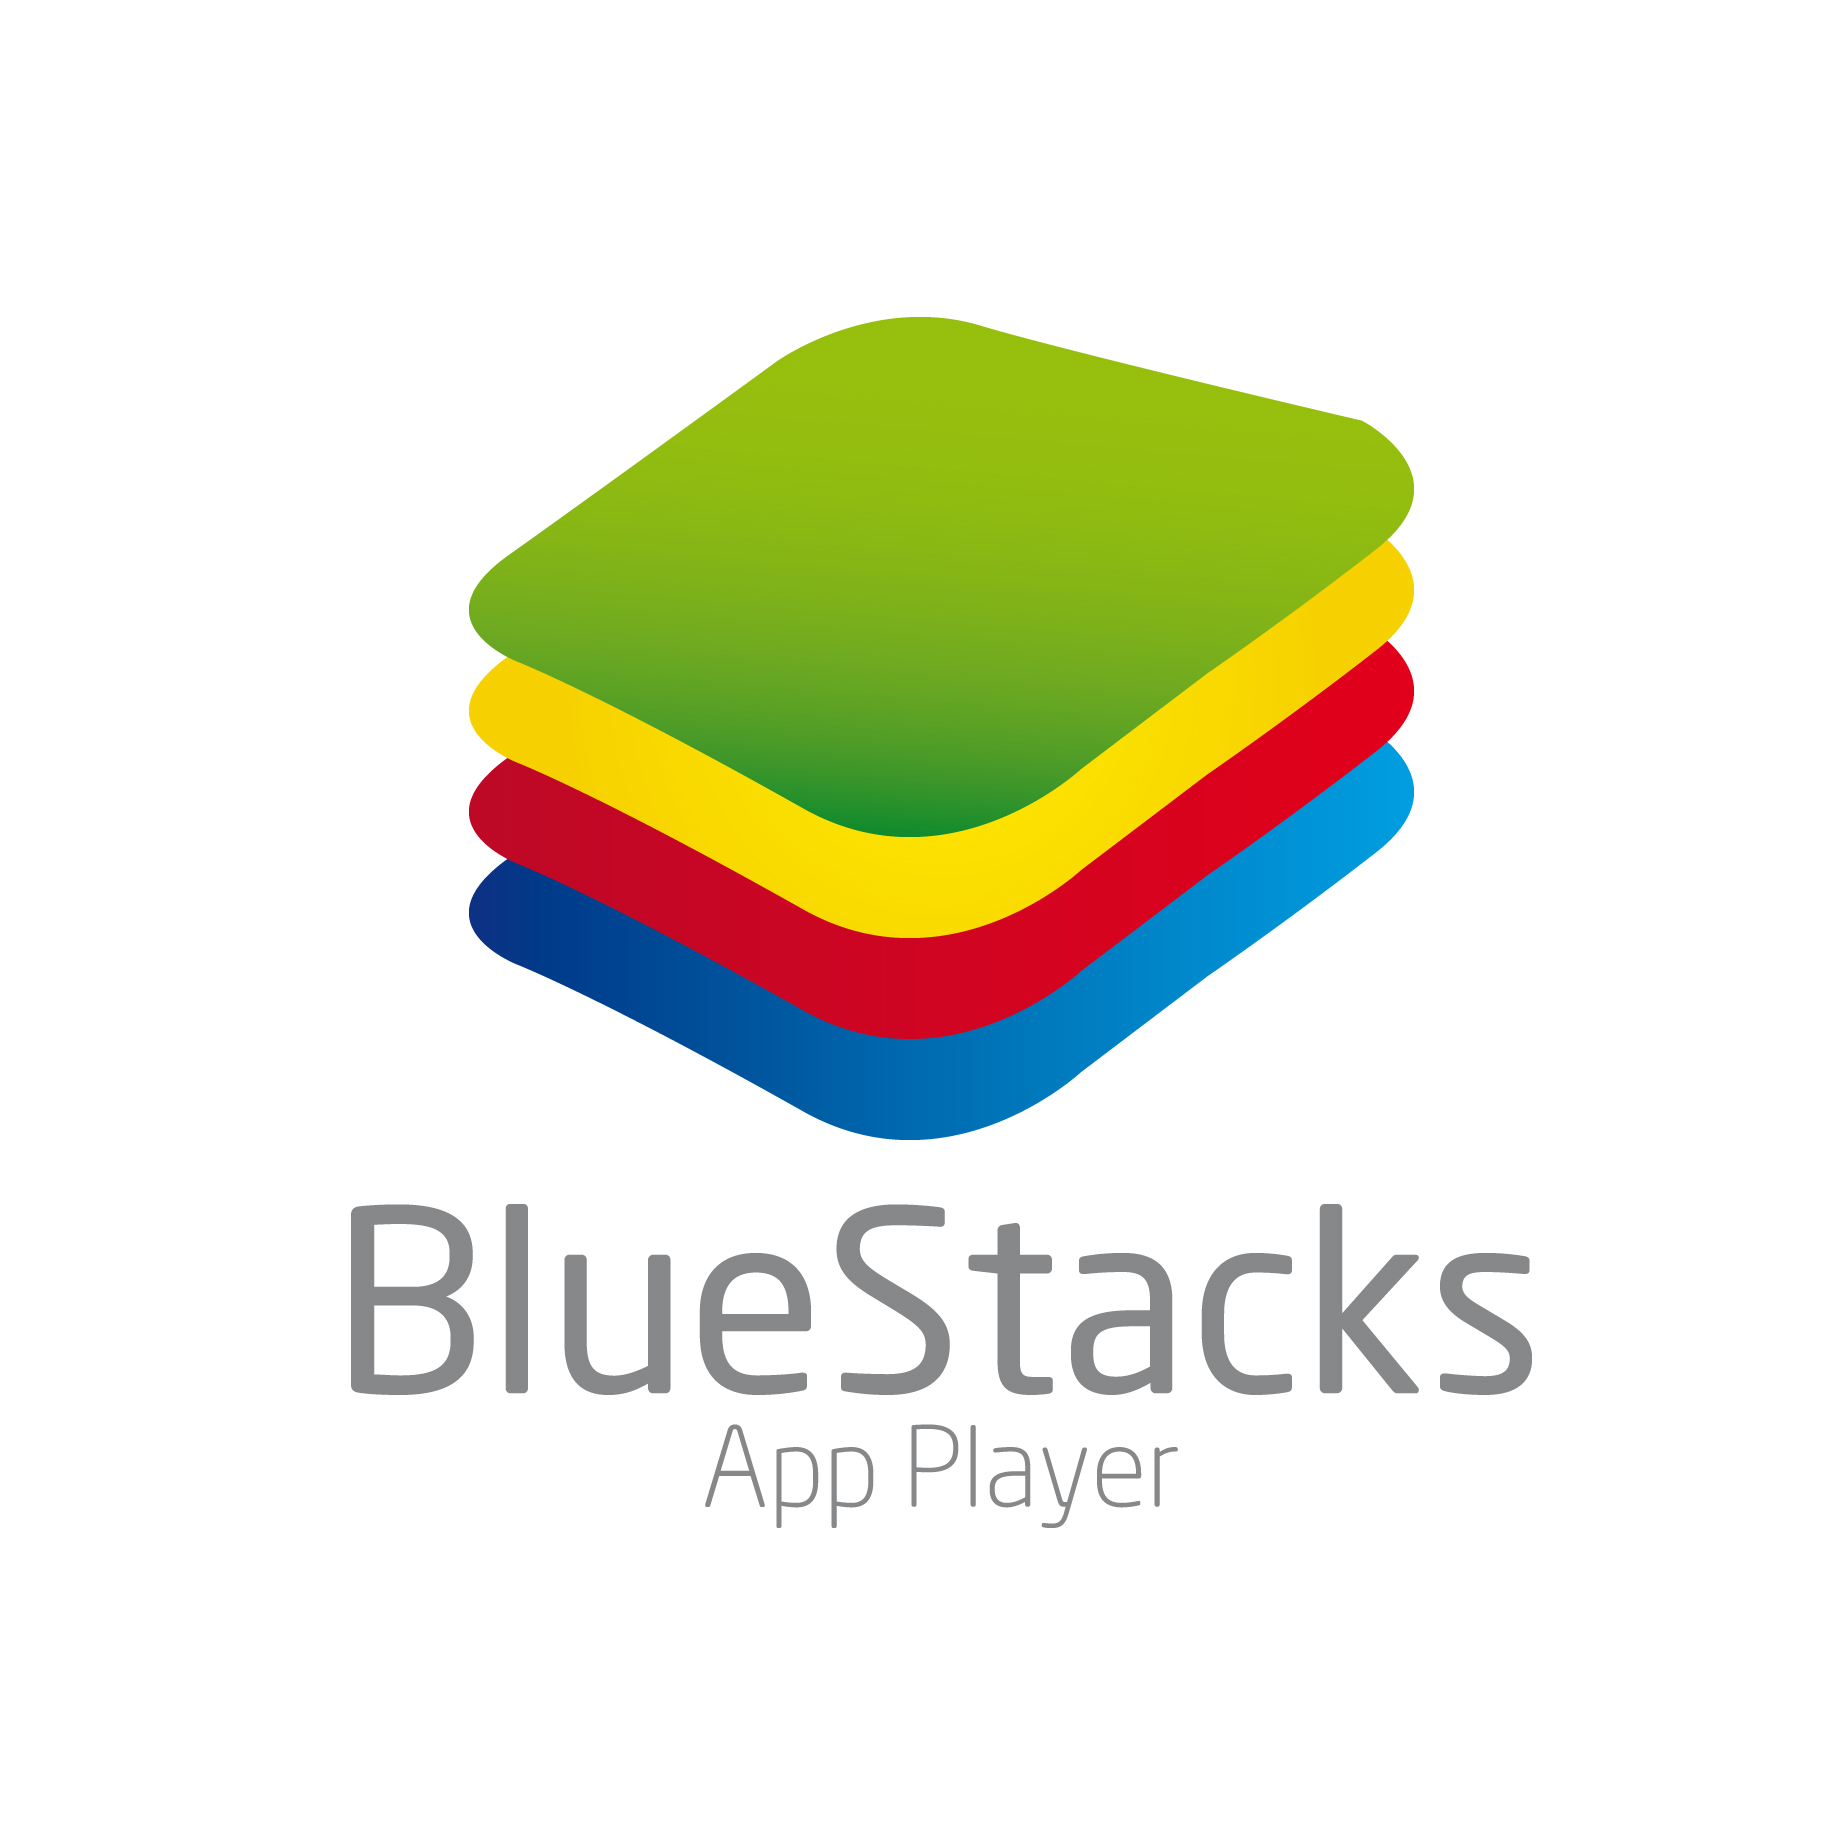 bluestacks application